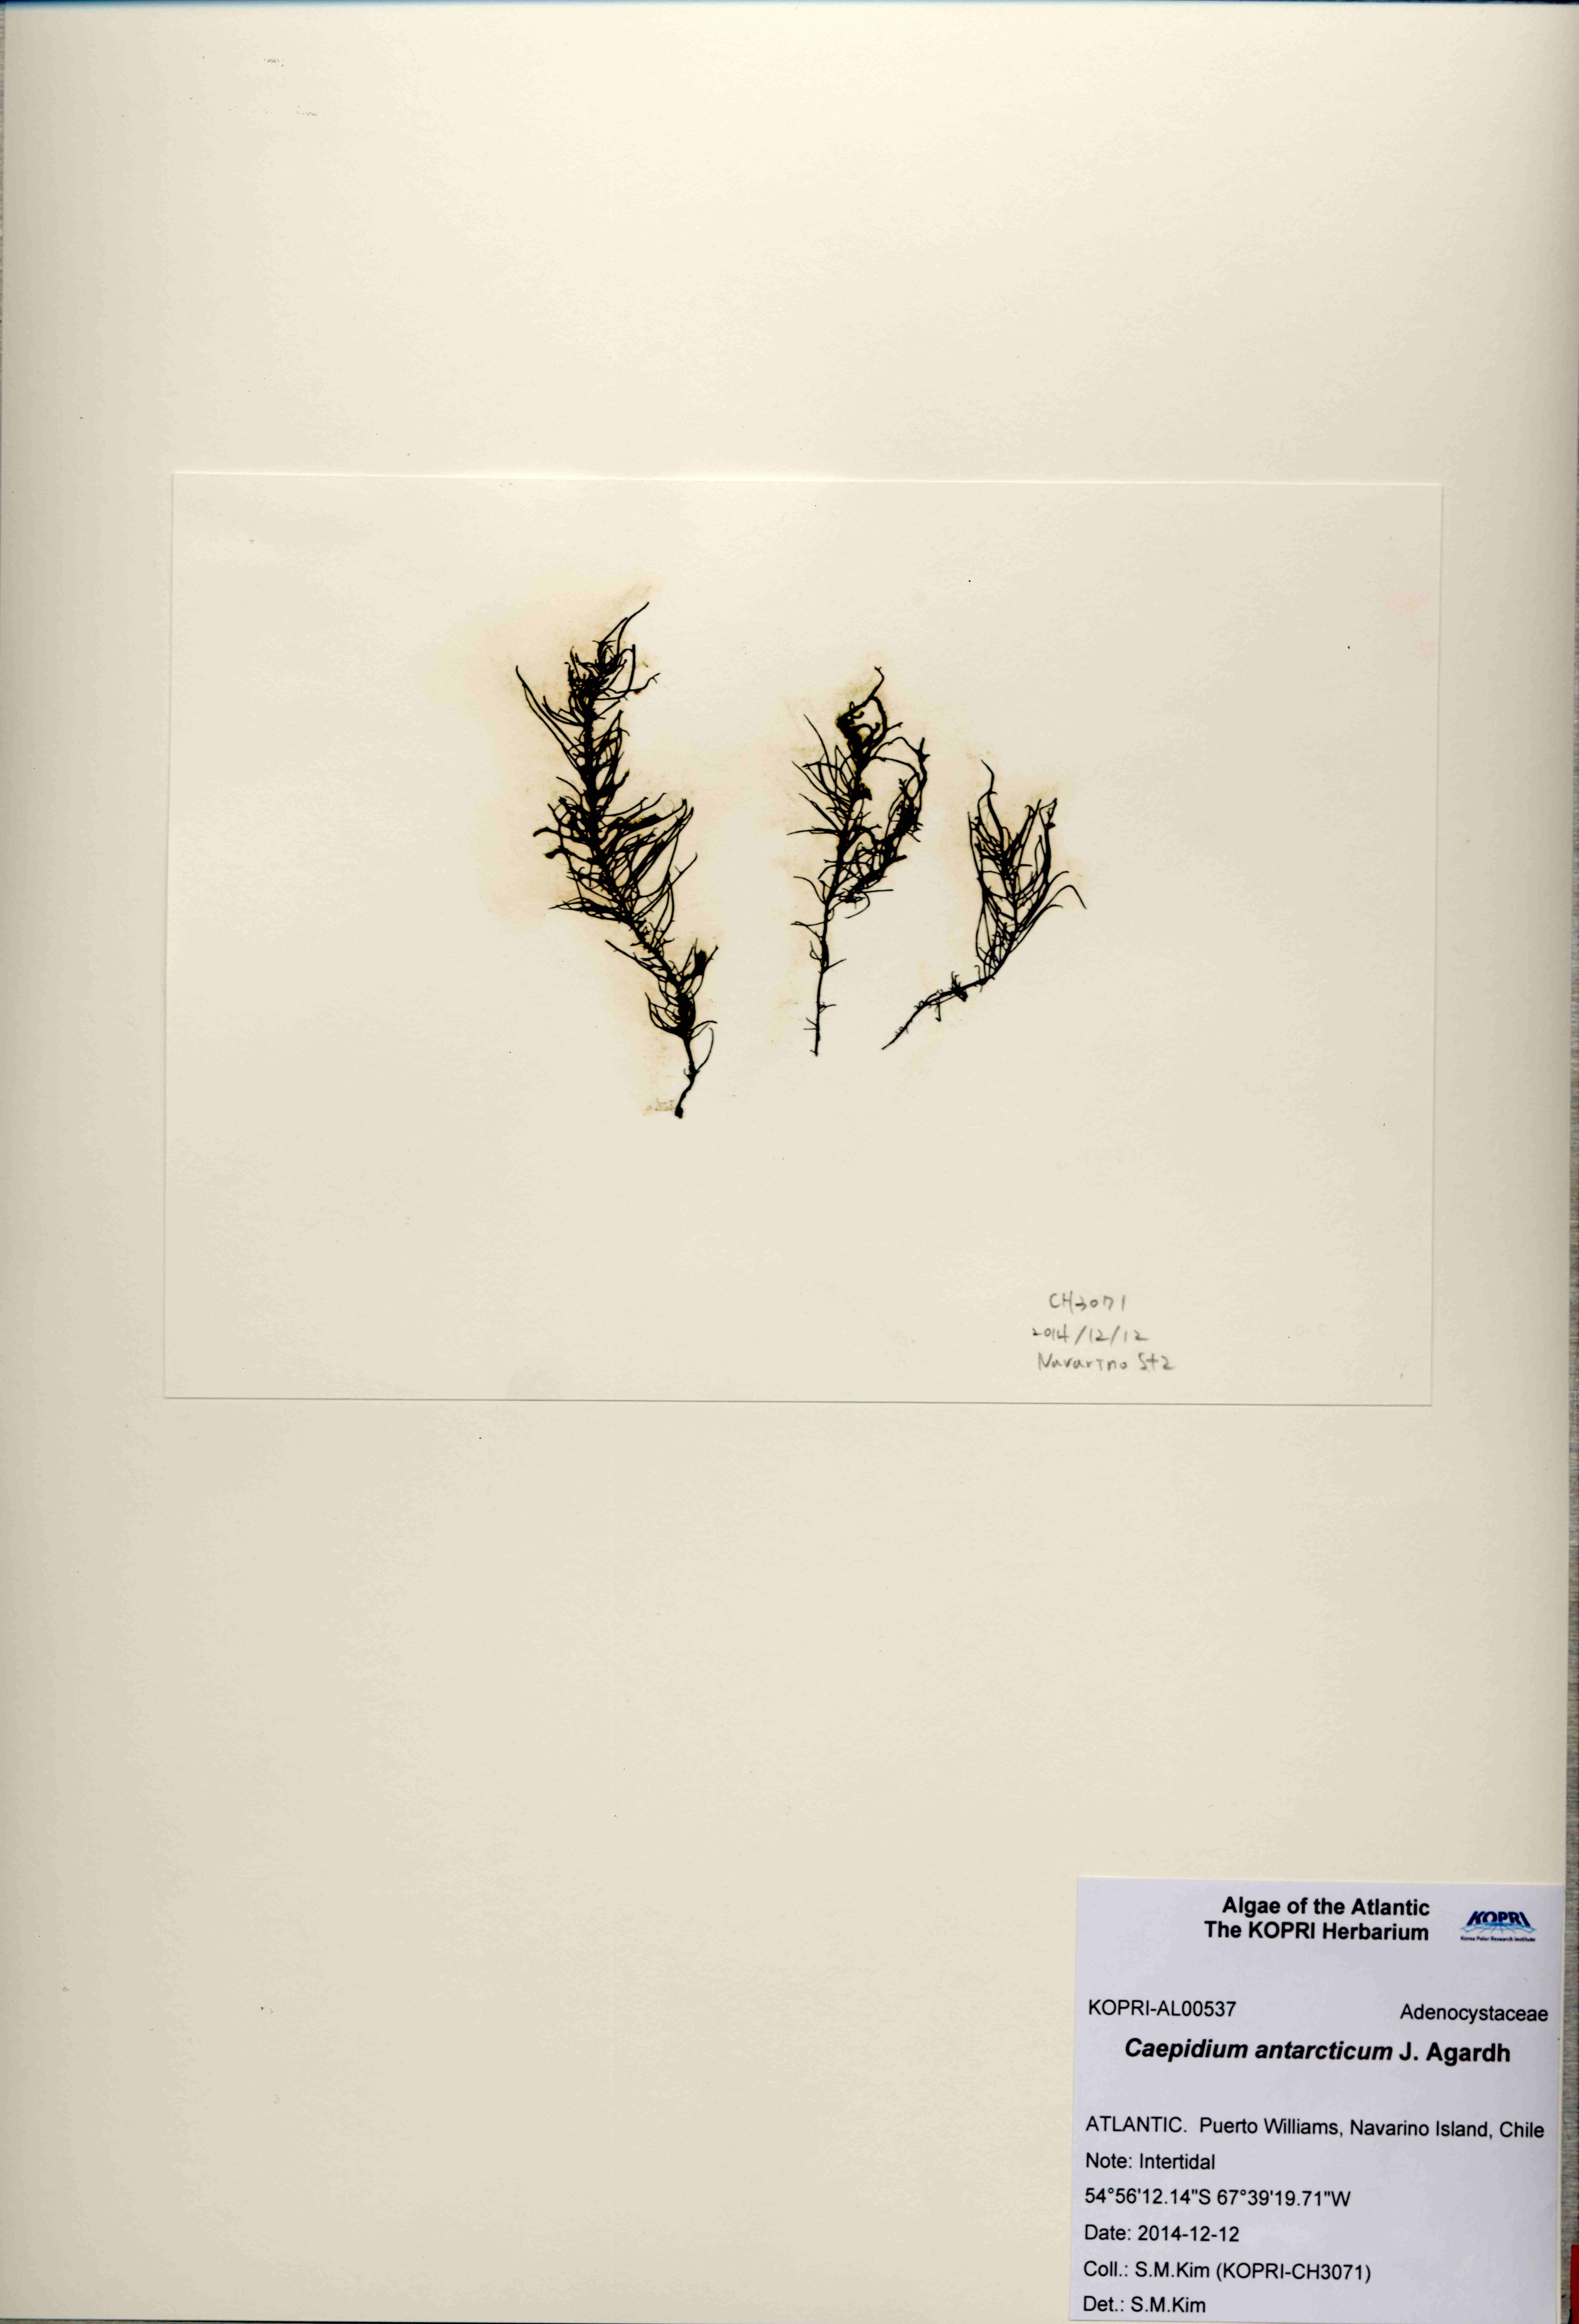 Caepidium antarcticum J. Agardh